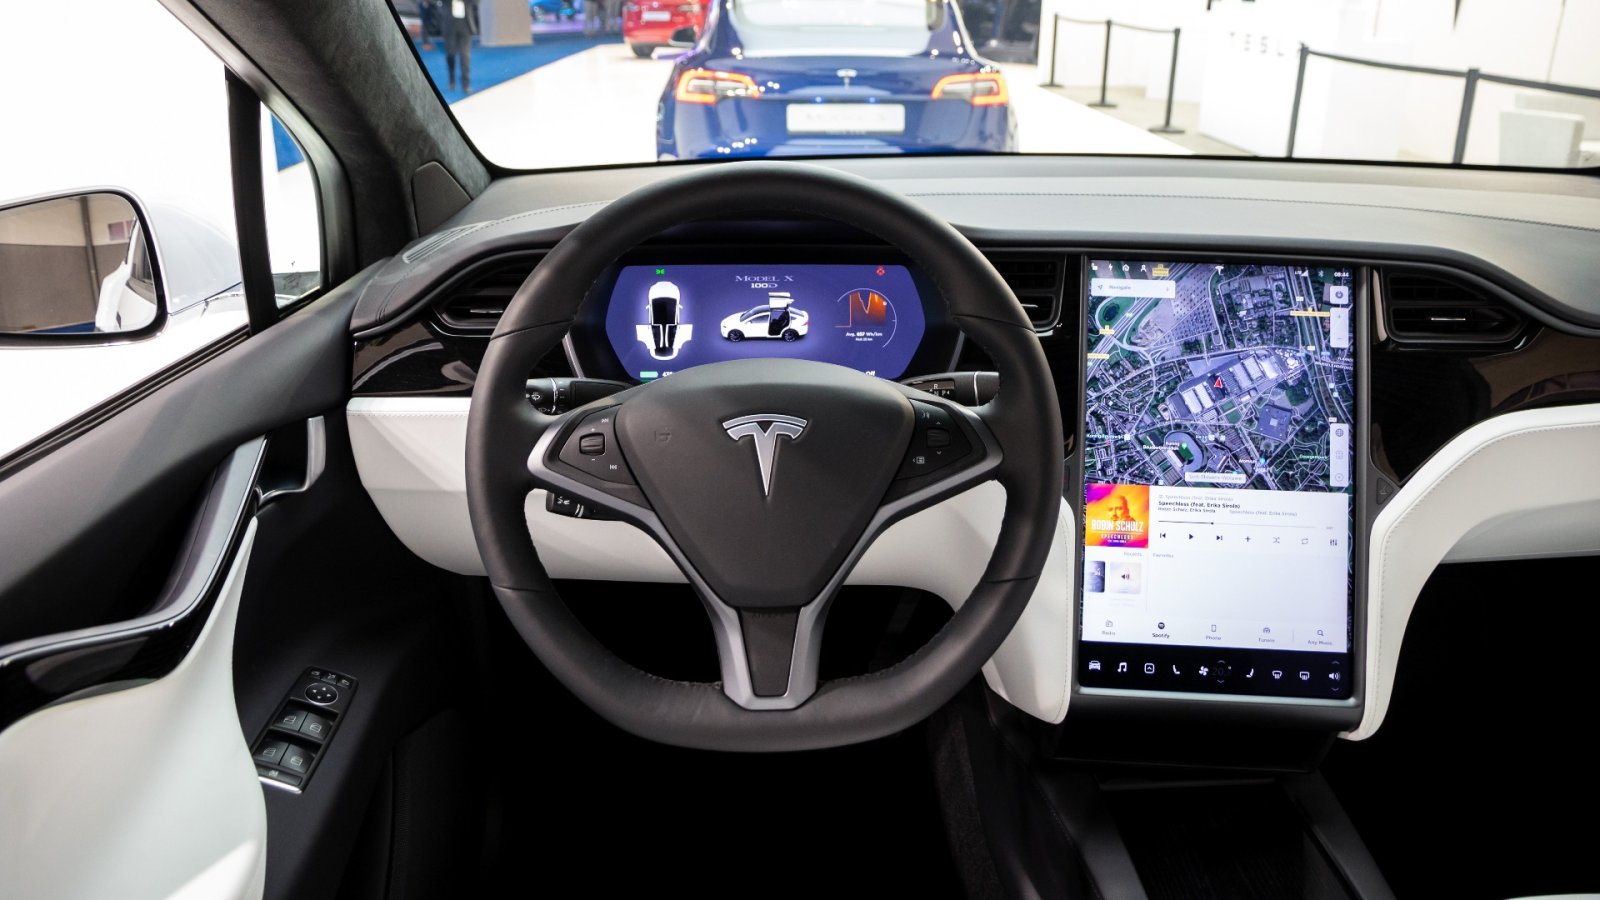 Hva er problemet med Tesla-biler og hvorfor anses programvaren som farlig?